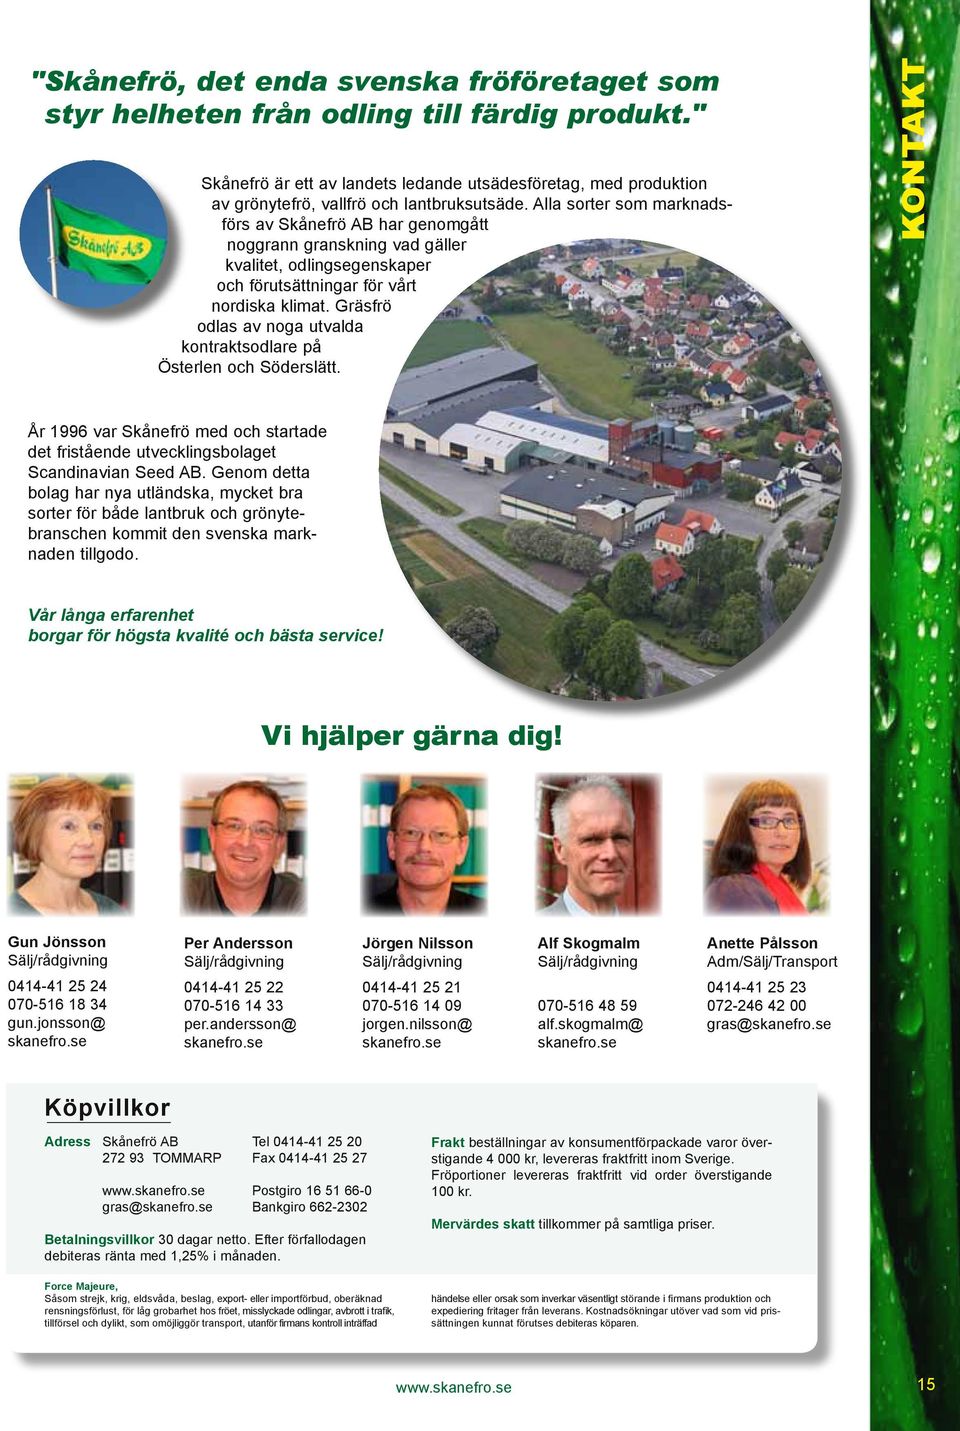 Alla sorter som marknadsförs av Skånefrö AB har genomgått noggrann granskning vad gäller kvalitet, odlingsegenskaper och förutsättningar för vårt nordiska klimat.